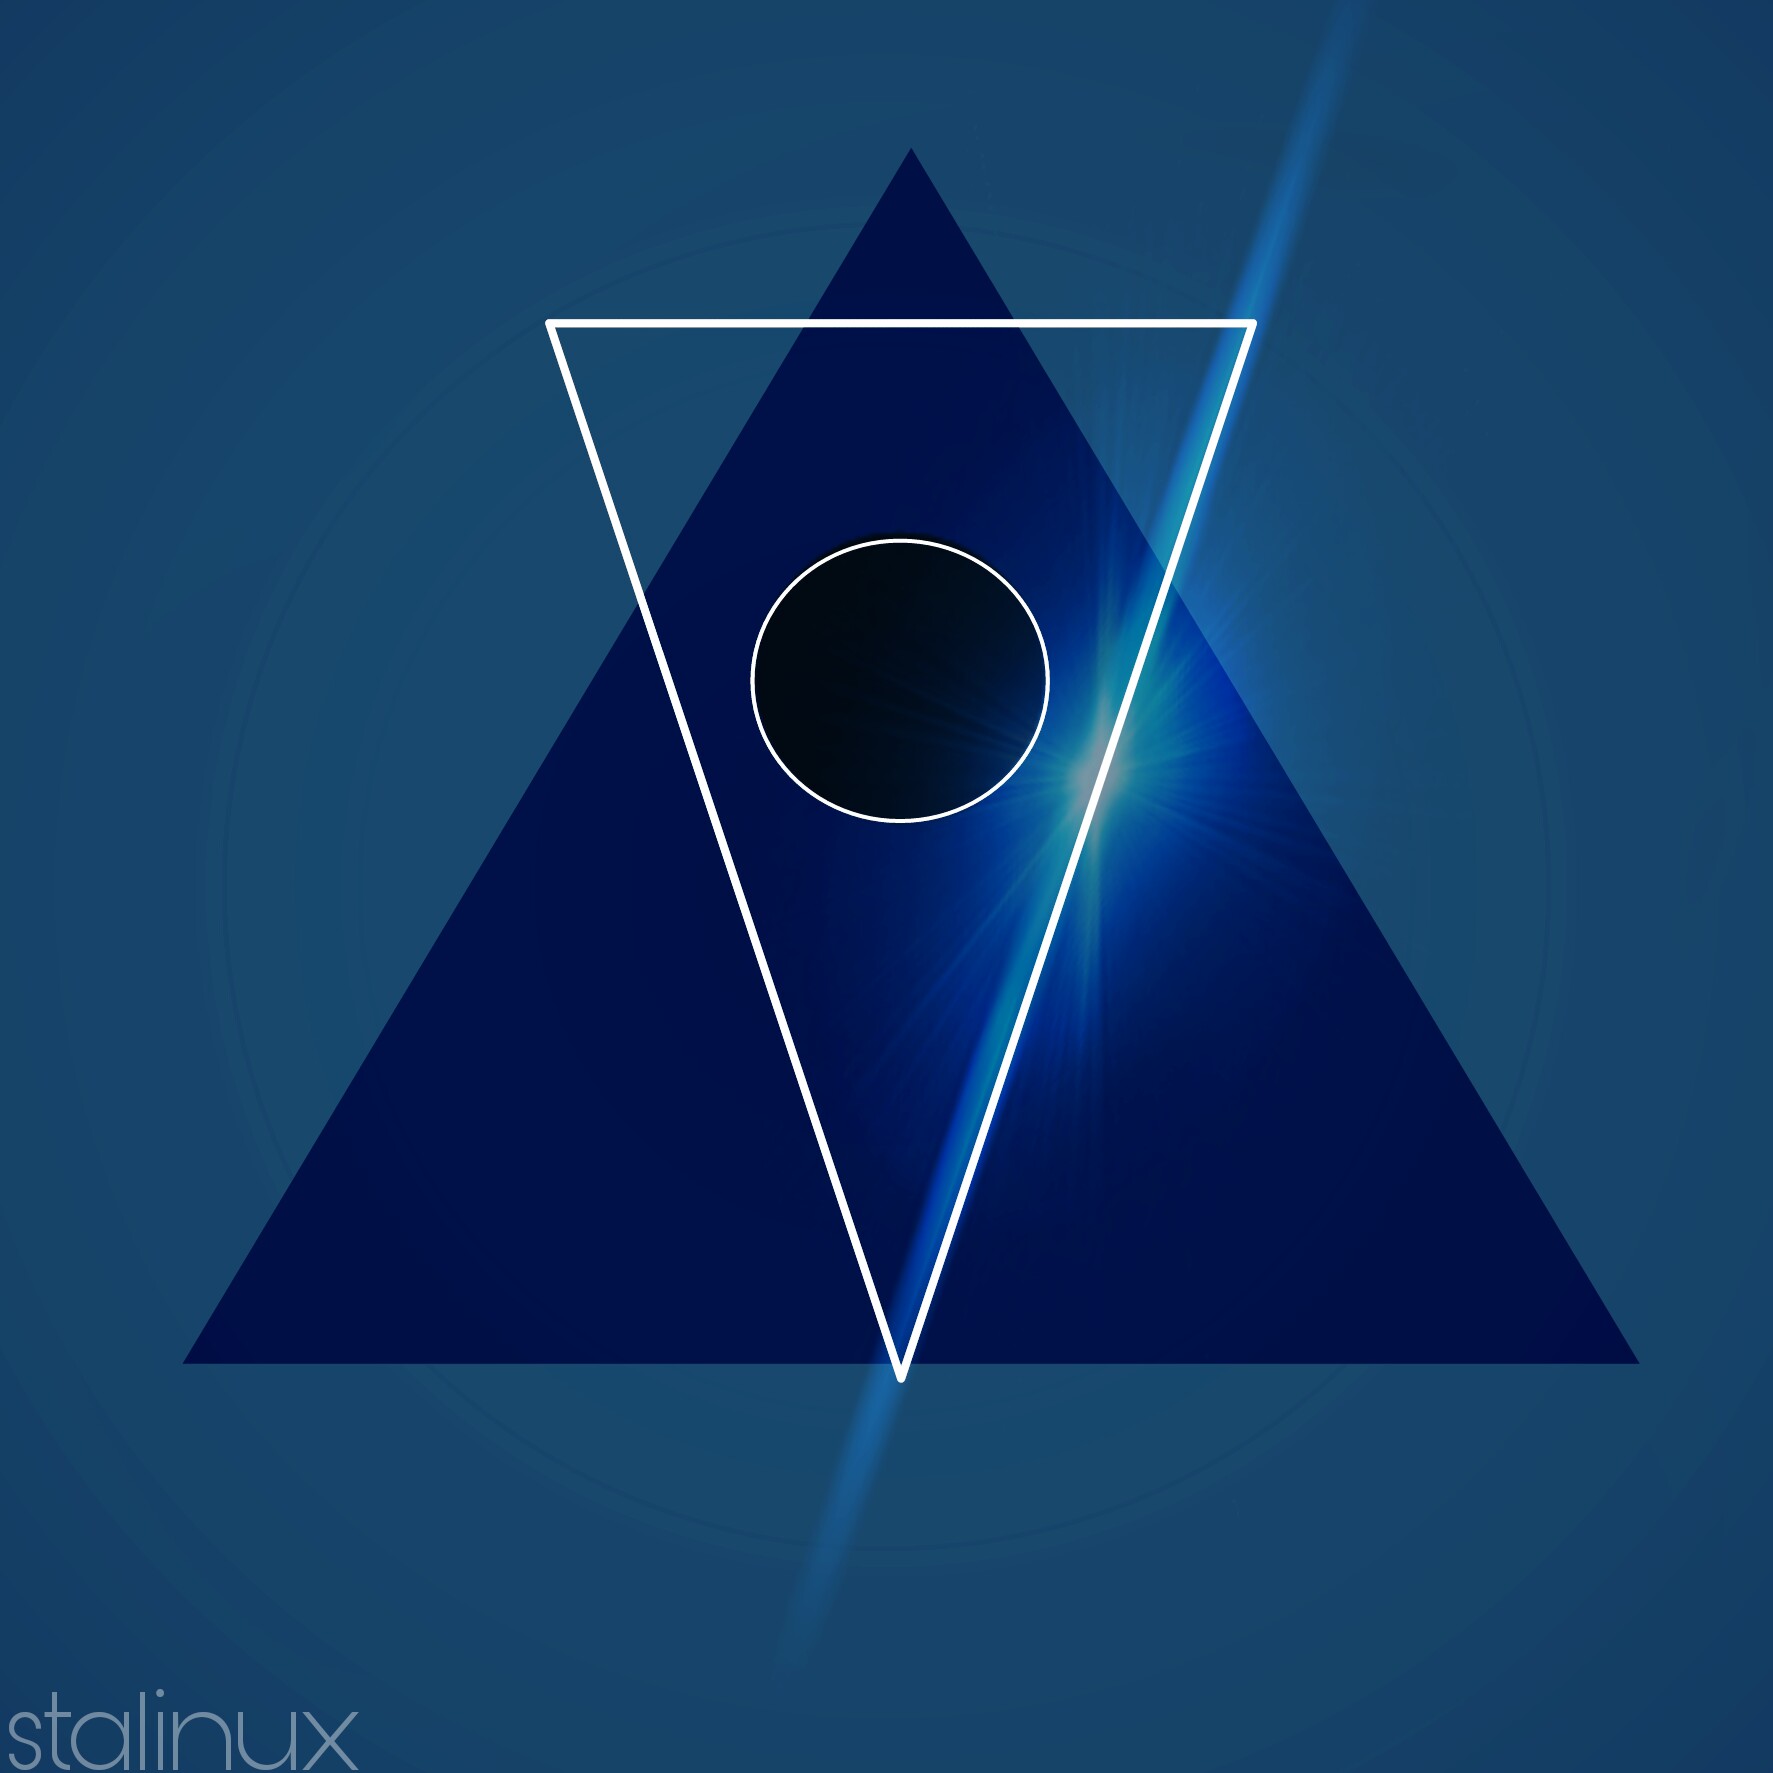 #tumblr #illuminati #wallpaper #freetoedit - Triangle - HD Wallpaper 